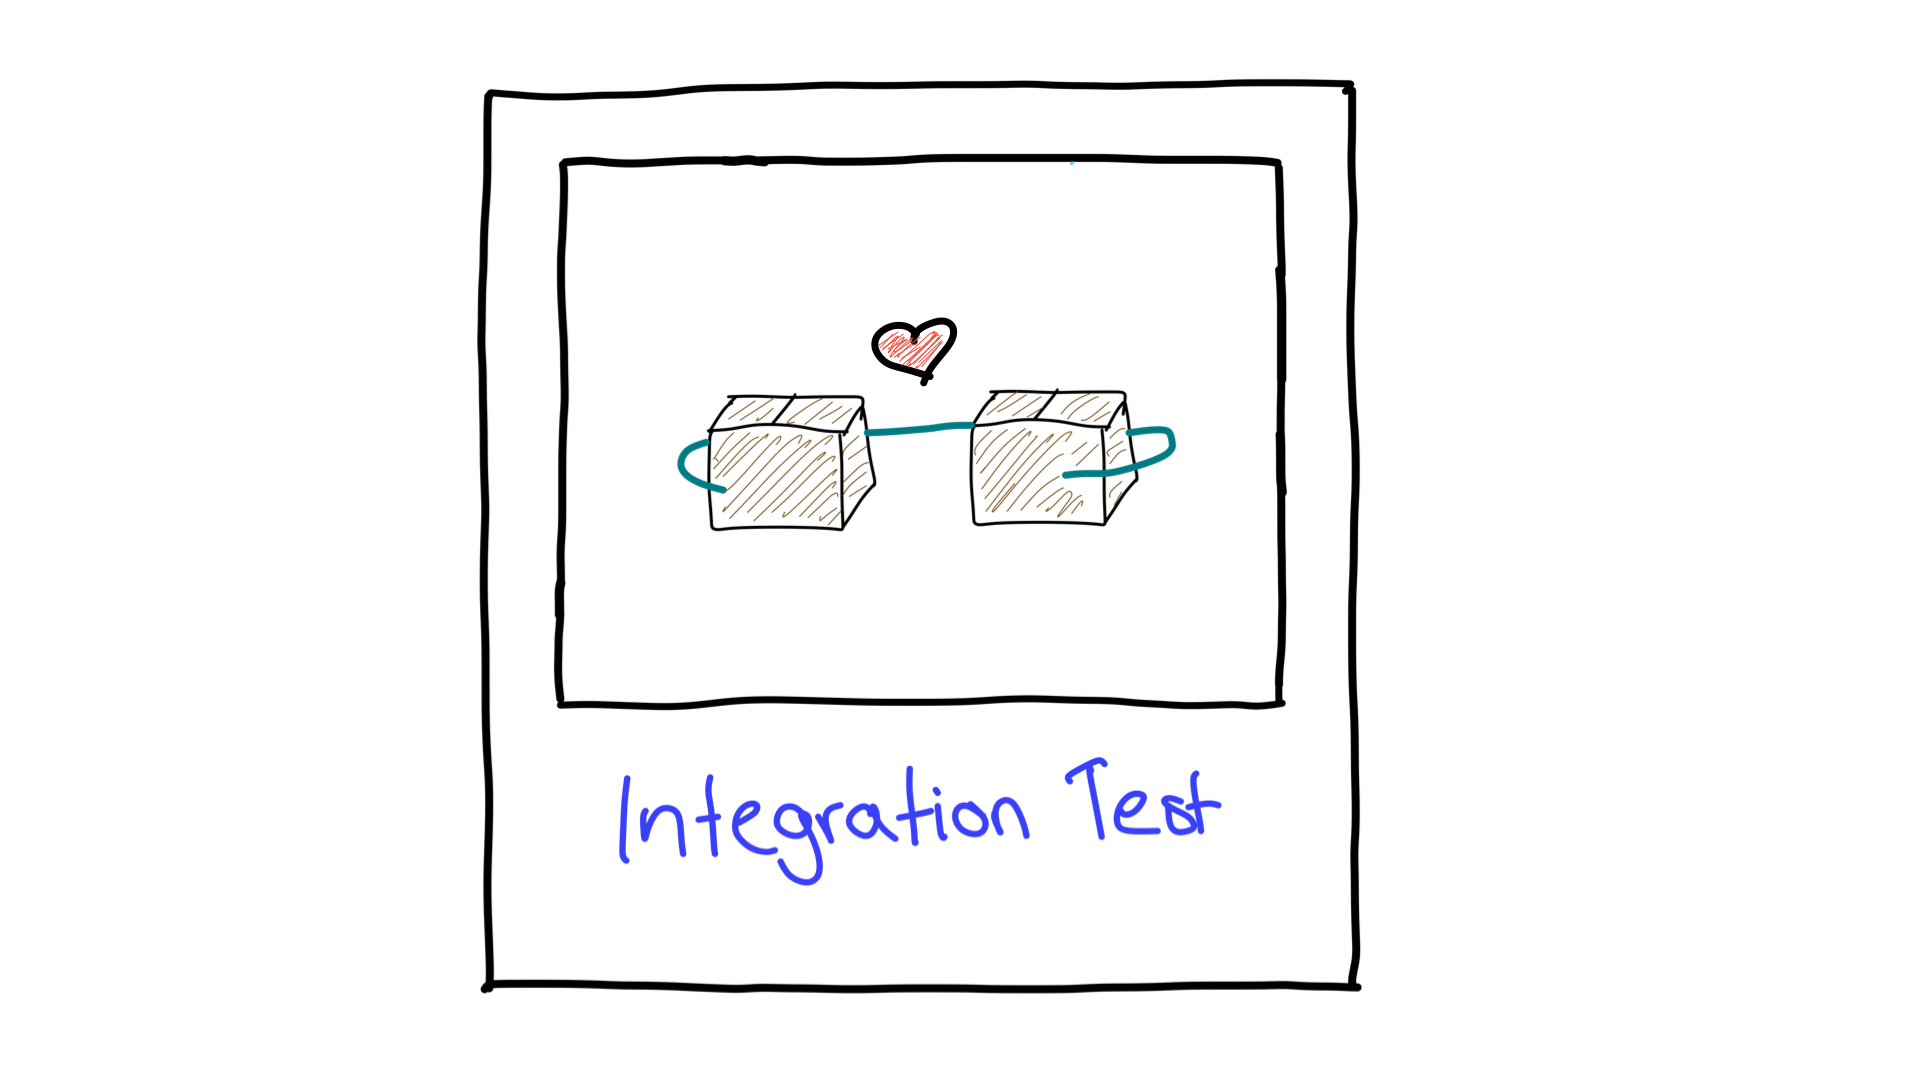 İki birimin birlikte nasıl çalıştığını gösteren entegrasyon testinin basitleştirilmiş bir gösterimi.